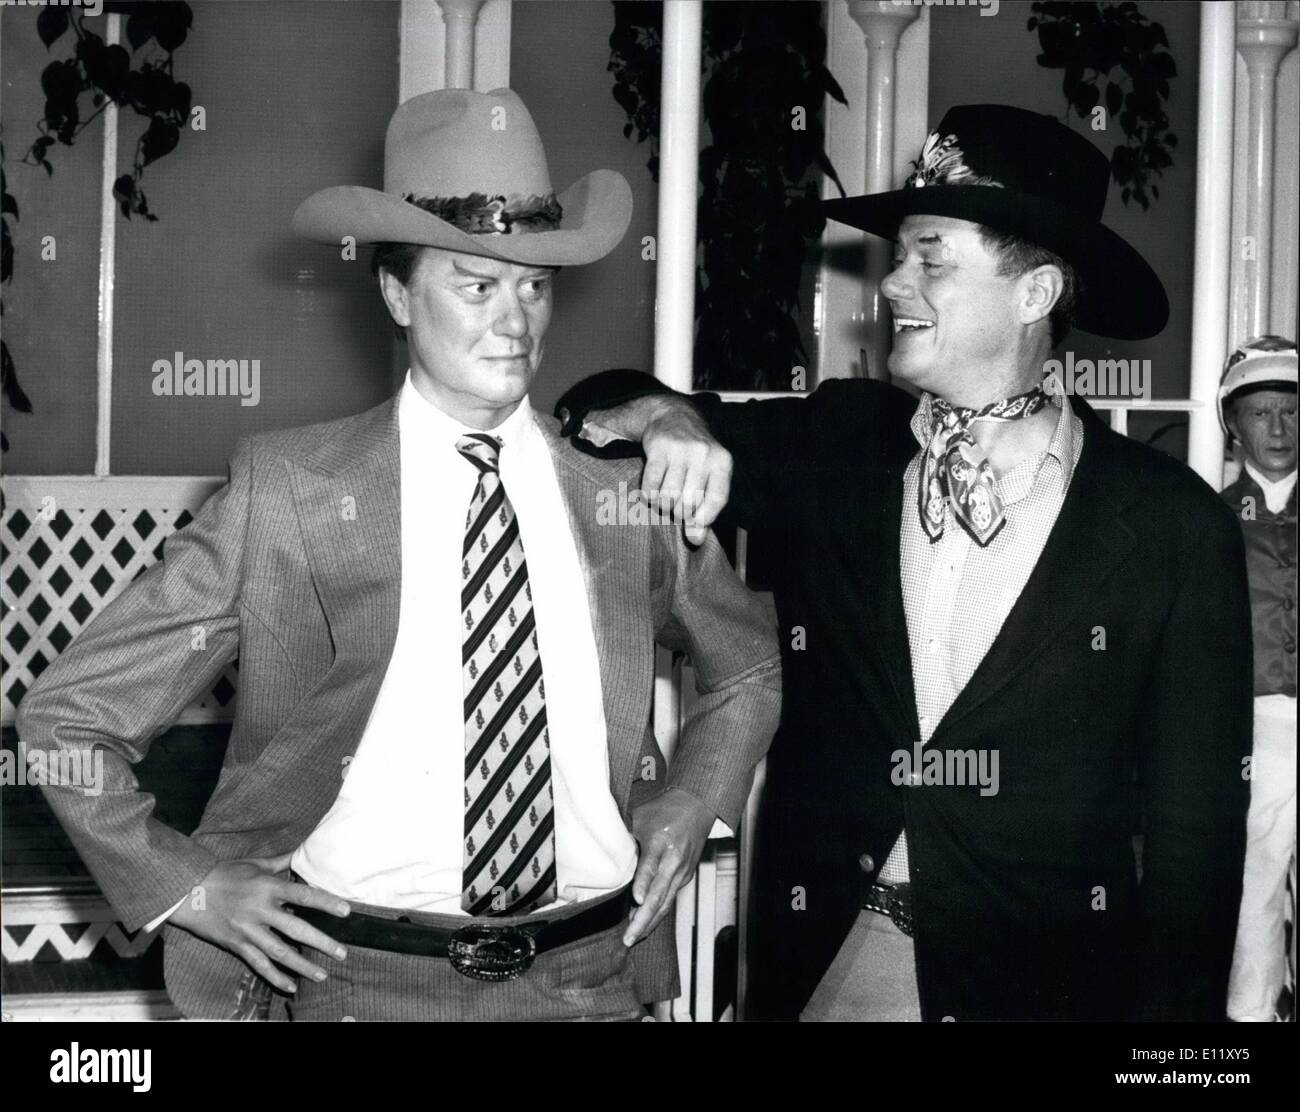 11. November 1980 - trifft j.r. j.r. Bei Madame Tussauds: Larry Hagman, j.r., der Dallas-Serie war bei Madame Tussaud zu seinem neuen Wachs-Porträt-bei seinem letzten Besuch in London im Juni er Madame Tussauds mit eine ganze Reihe von Kleidung präsentierte, einschließlich ein Statson Hut, westlichen Gürtel und Stiefel, präsentierte er ein Quadratfuß des Rasens von South Fork Ranch, Dallas, die neben seinem Ebenbild ausgestellt werden. Foto zeigt "Sie können nicht helfen, lachen", sagt Larry Hagman, als er mit seinem neuen Wachsmodell von sich selbst bei Madame Tussaud stellt heute. Stockfoto